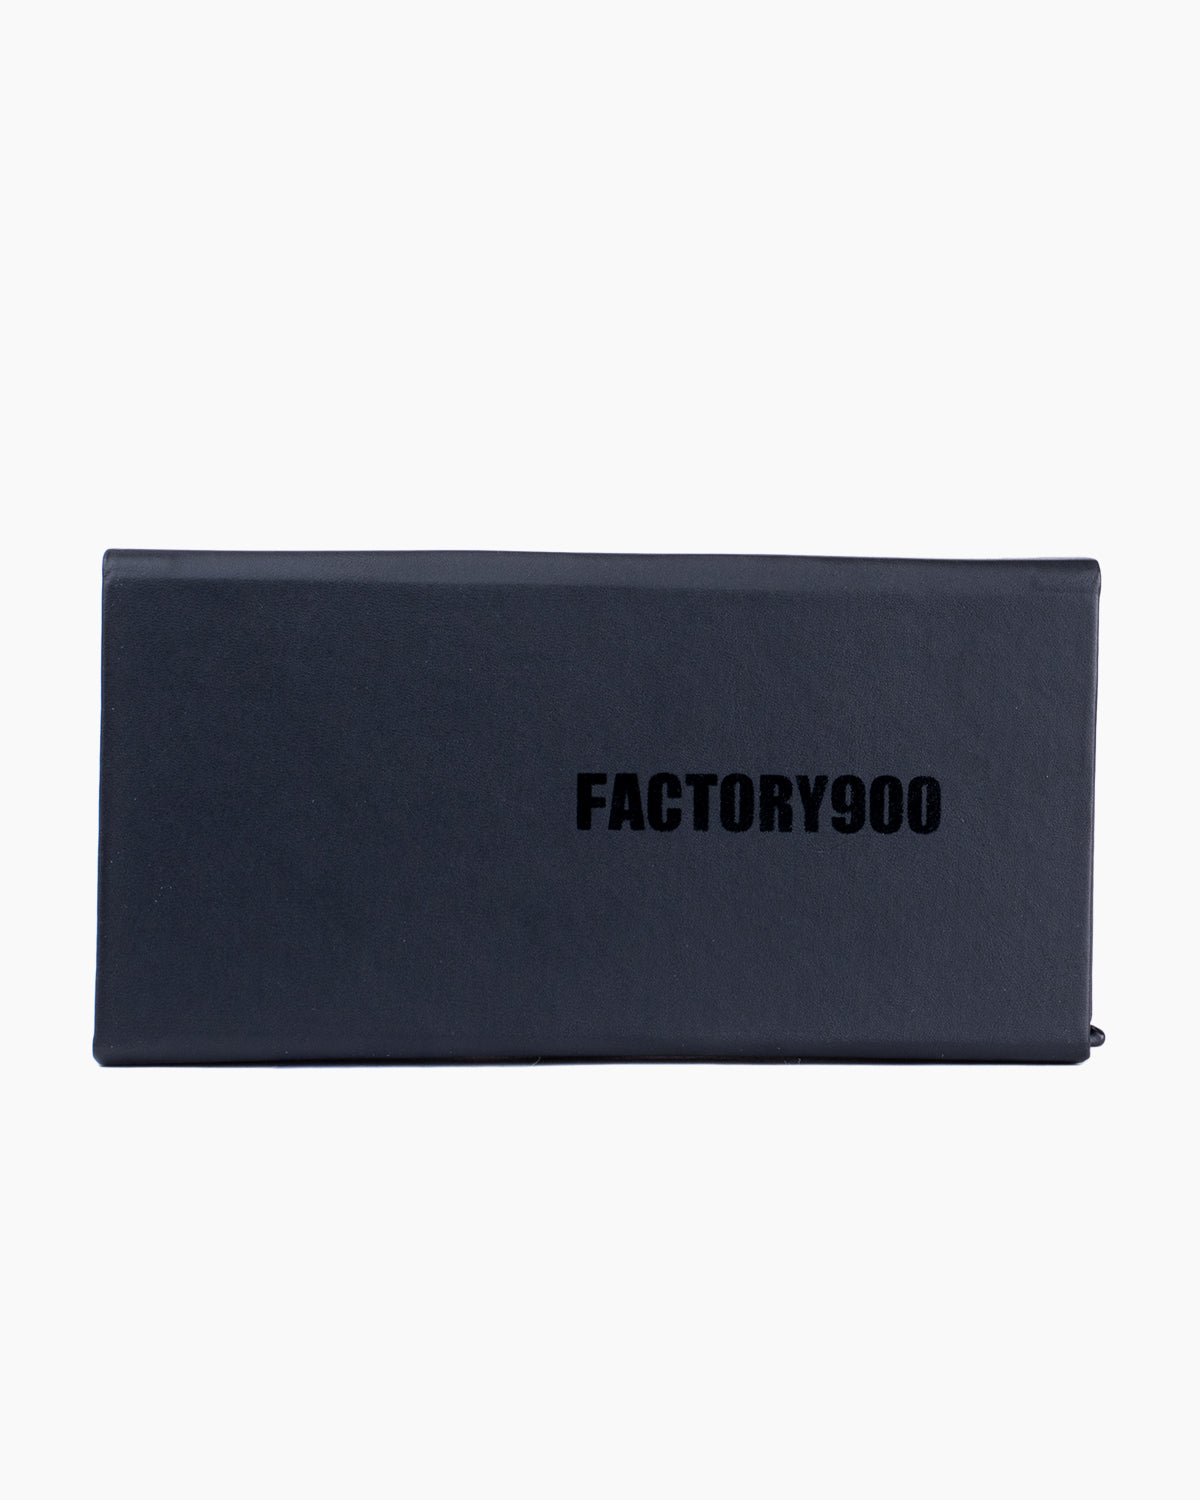 Factory 900 - RF-170 - 897 | Bar à lunettes:  Marie-Sophie Dion